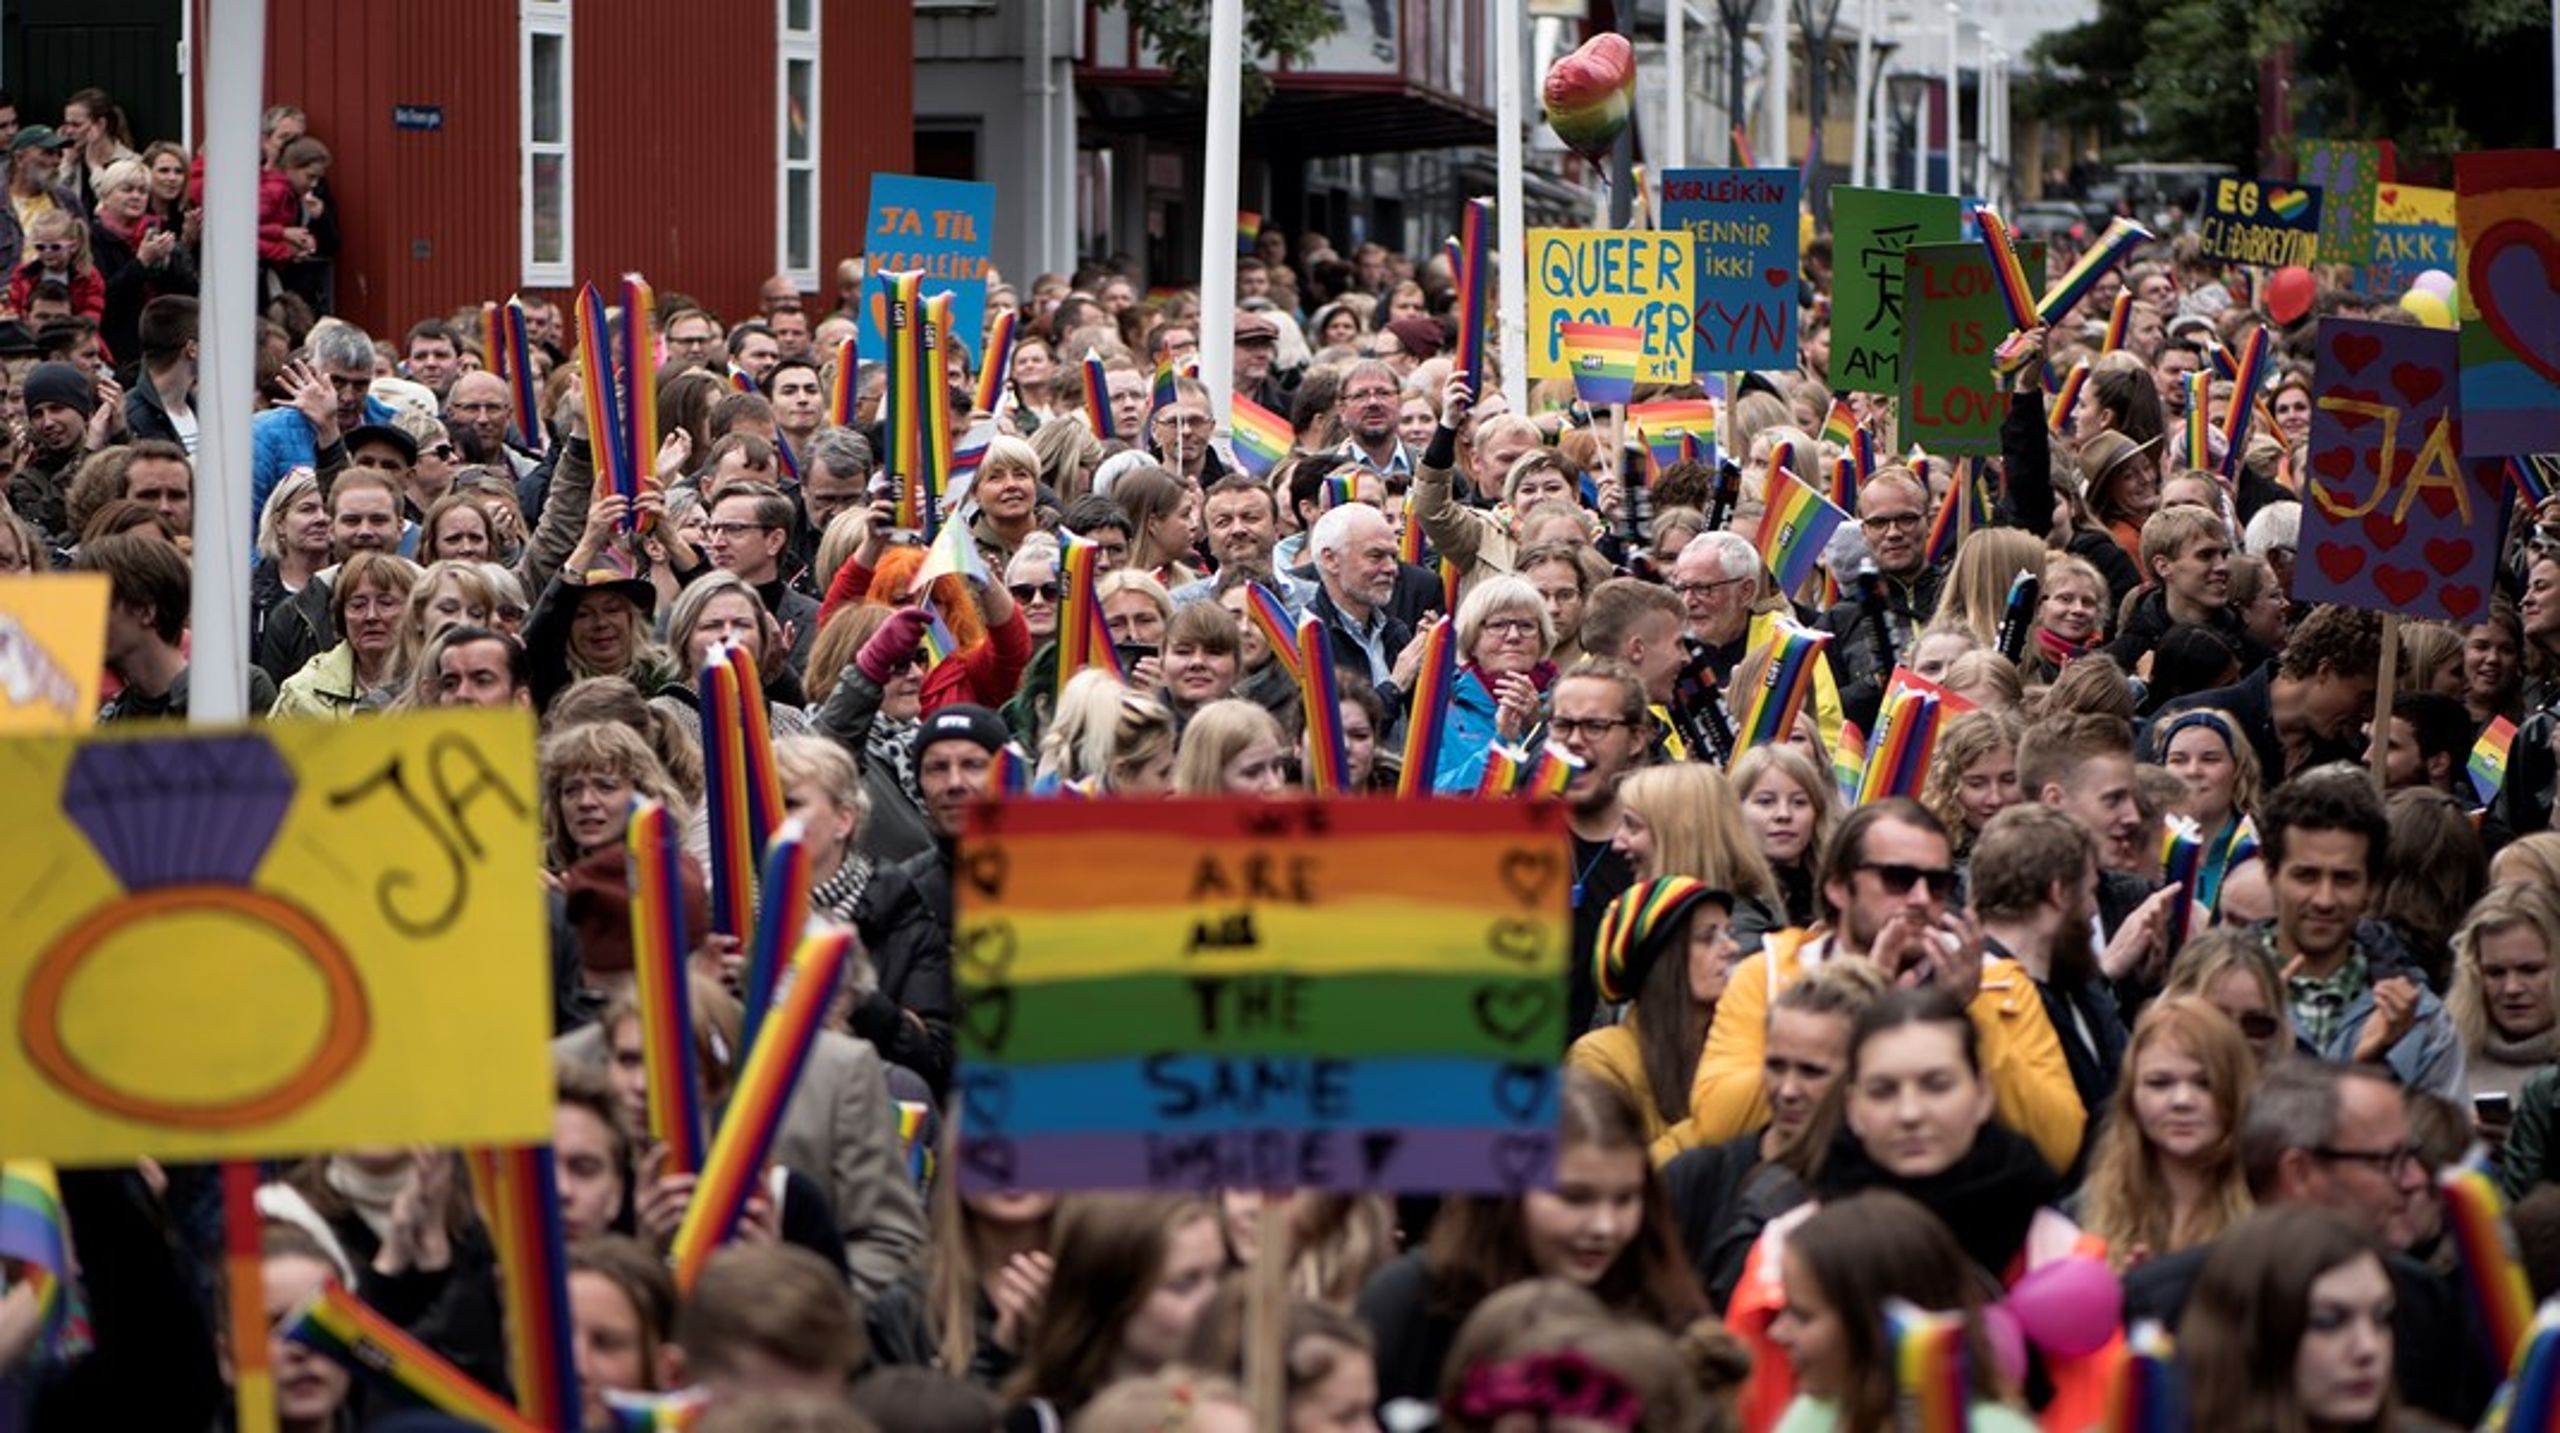 I 2016 vedtog Lagtinget på Færøerne, at to personer af samme køn kunne blive borgerligt viet. Prideparaden på Færøerne siges at være verdens største, da omkring 10 procent af befolkningen deltager.